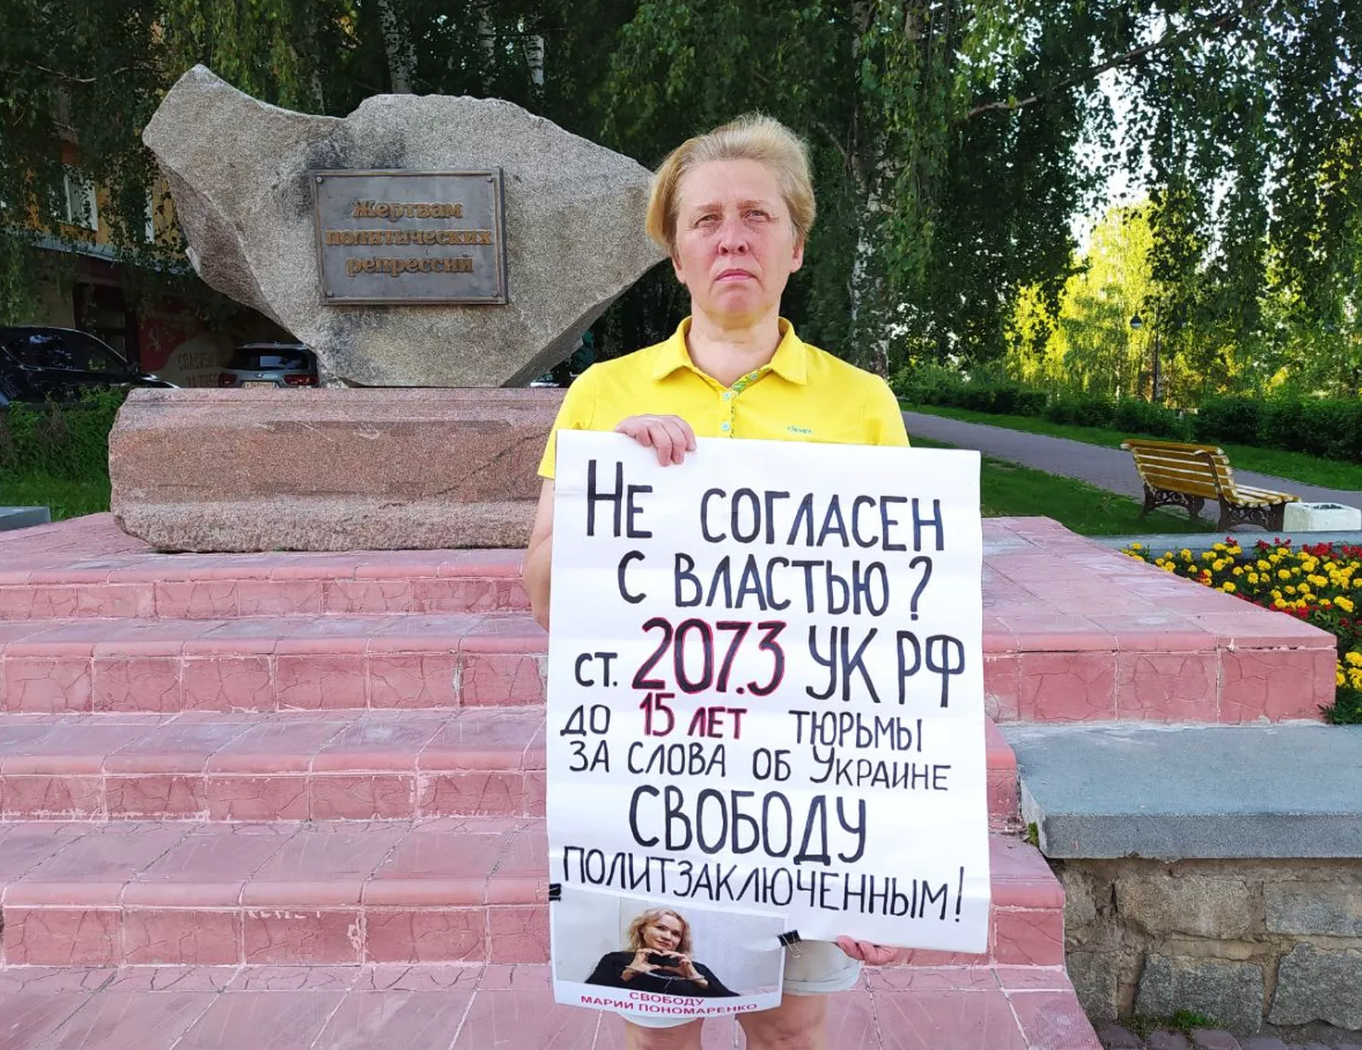 Для активистки из Кирова Светланы Мариной запросили два года колонии. Она назвала «военкора» Татарского преступником